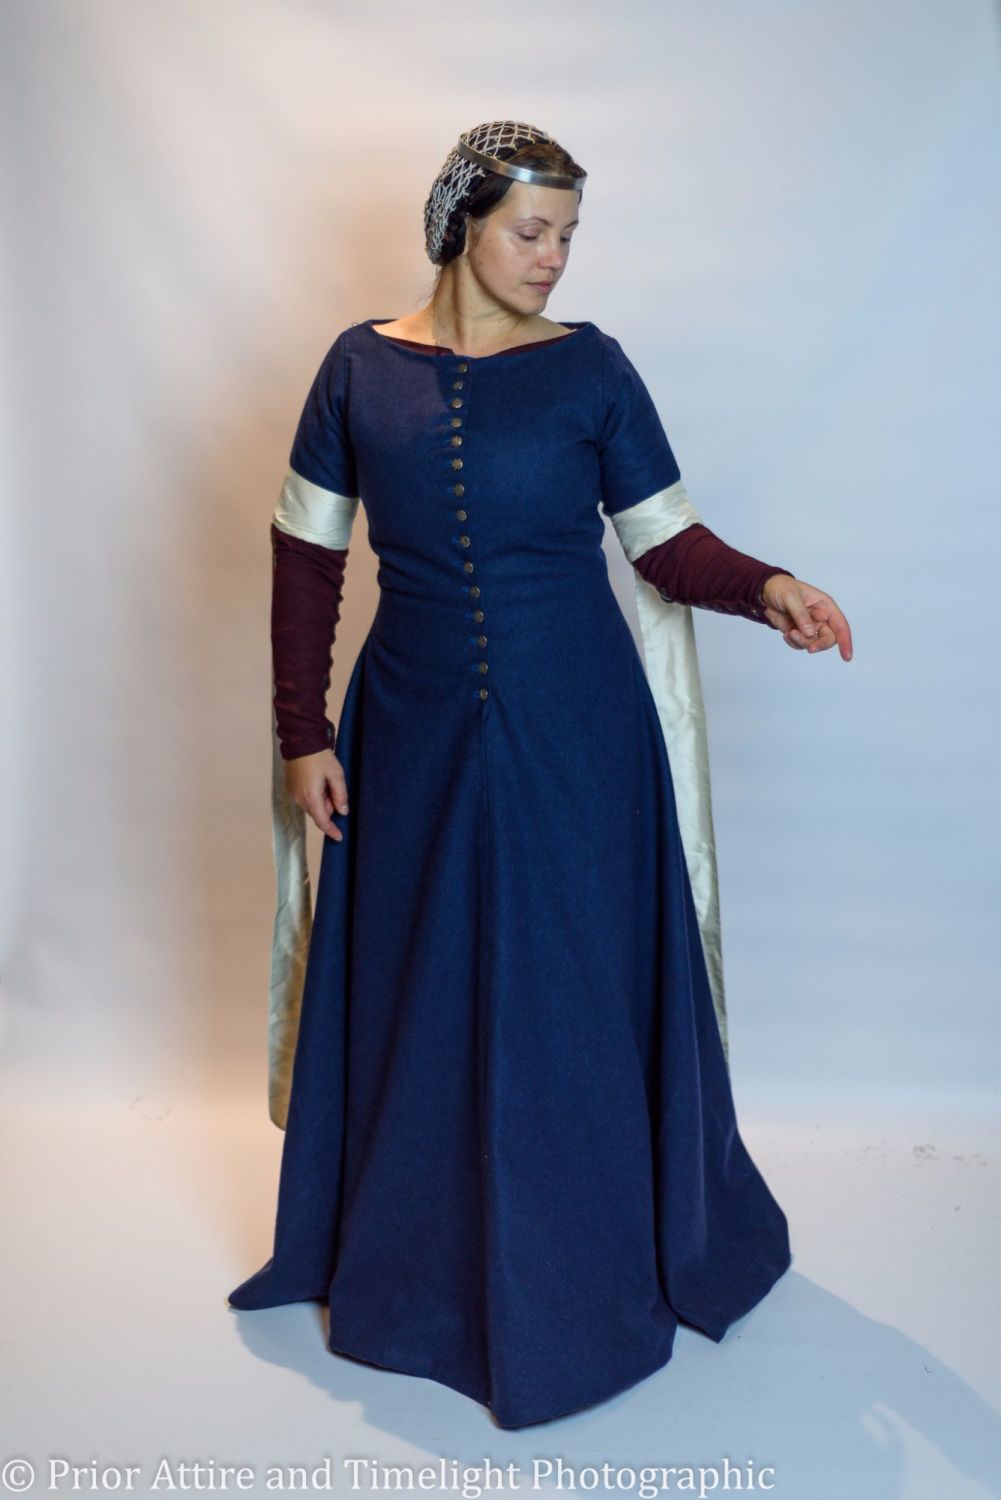 Medieval dress cotehardie